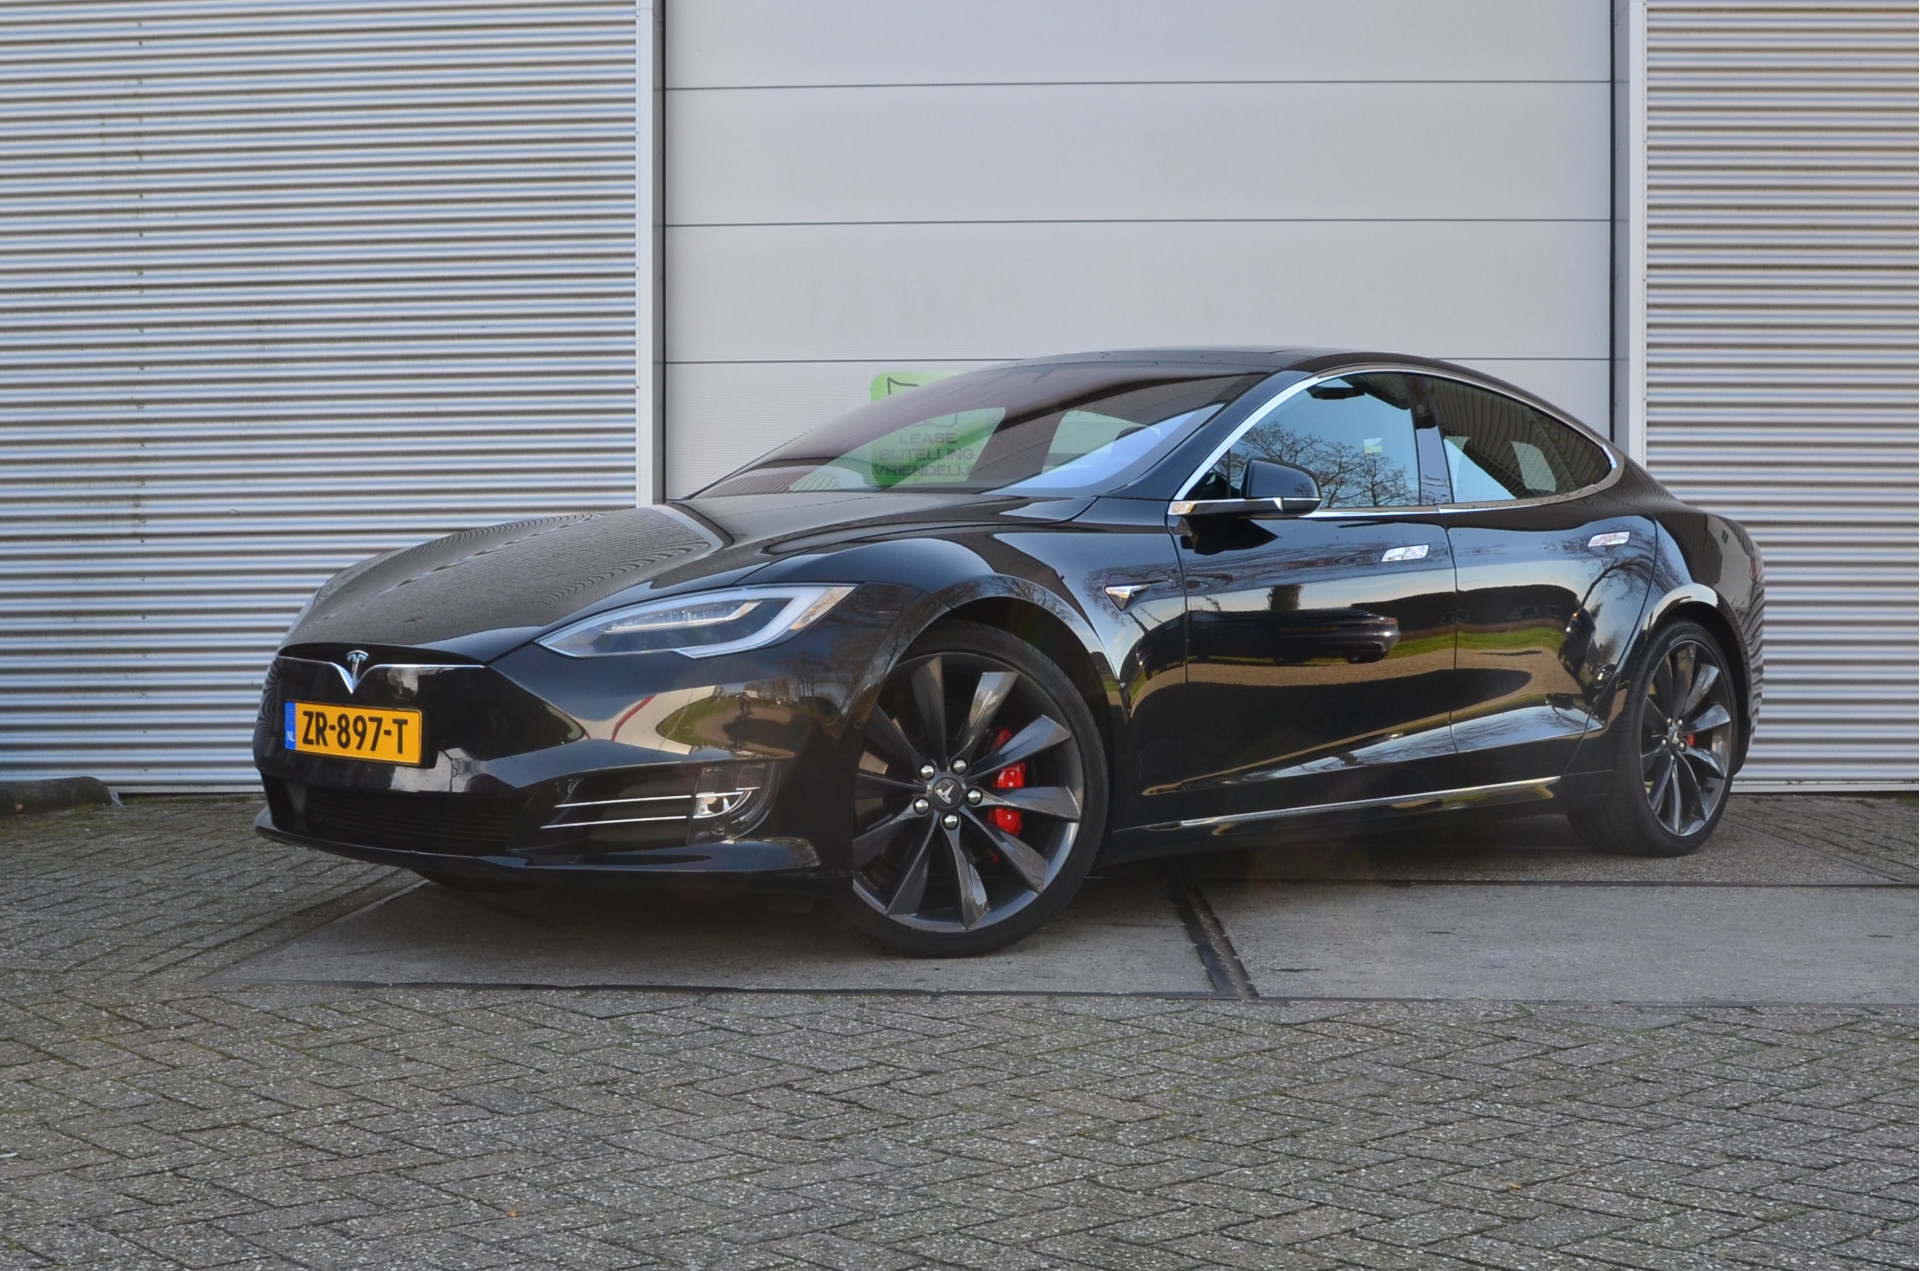 Tesla Model S 100D Performance Ludicrous+, Enhanced AutoPilot3.0, MARGE rijklaar prijs bij viaBOVAG.nl